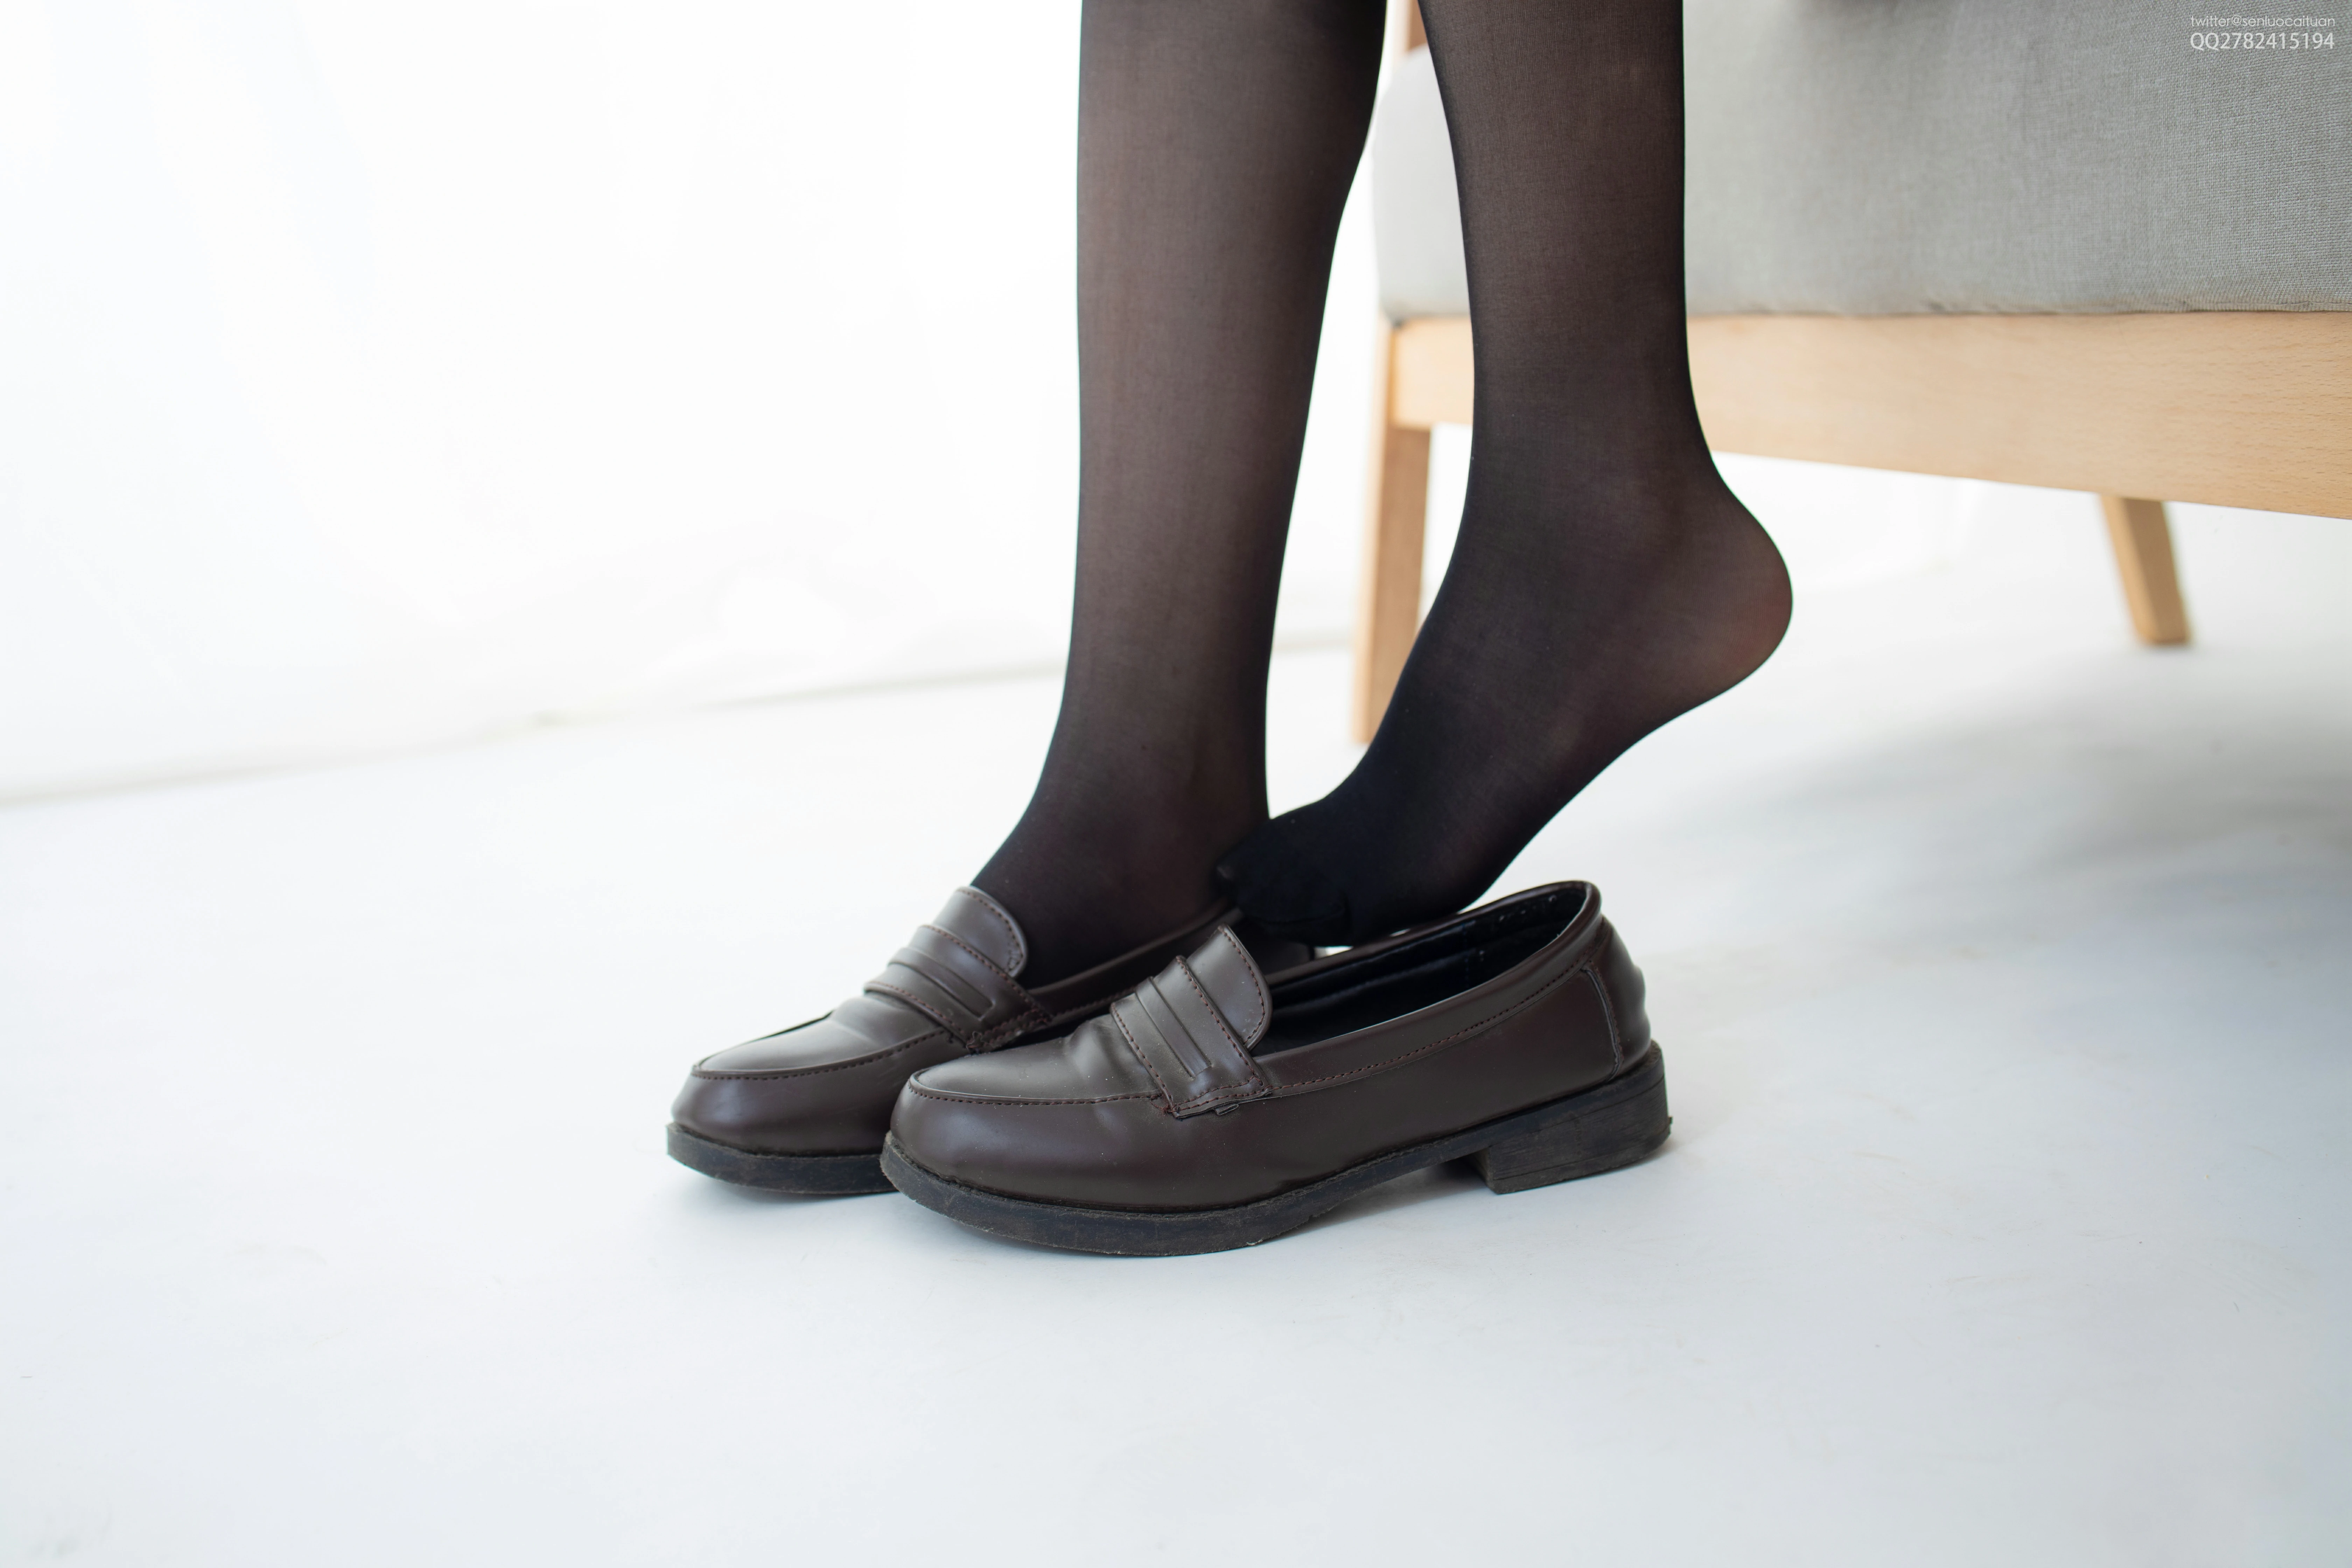 [森萝财团]JKFUN-百元系列1-1 Aika 蓝色格子短裙加黑色丝袜美腿性感私房写真集,